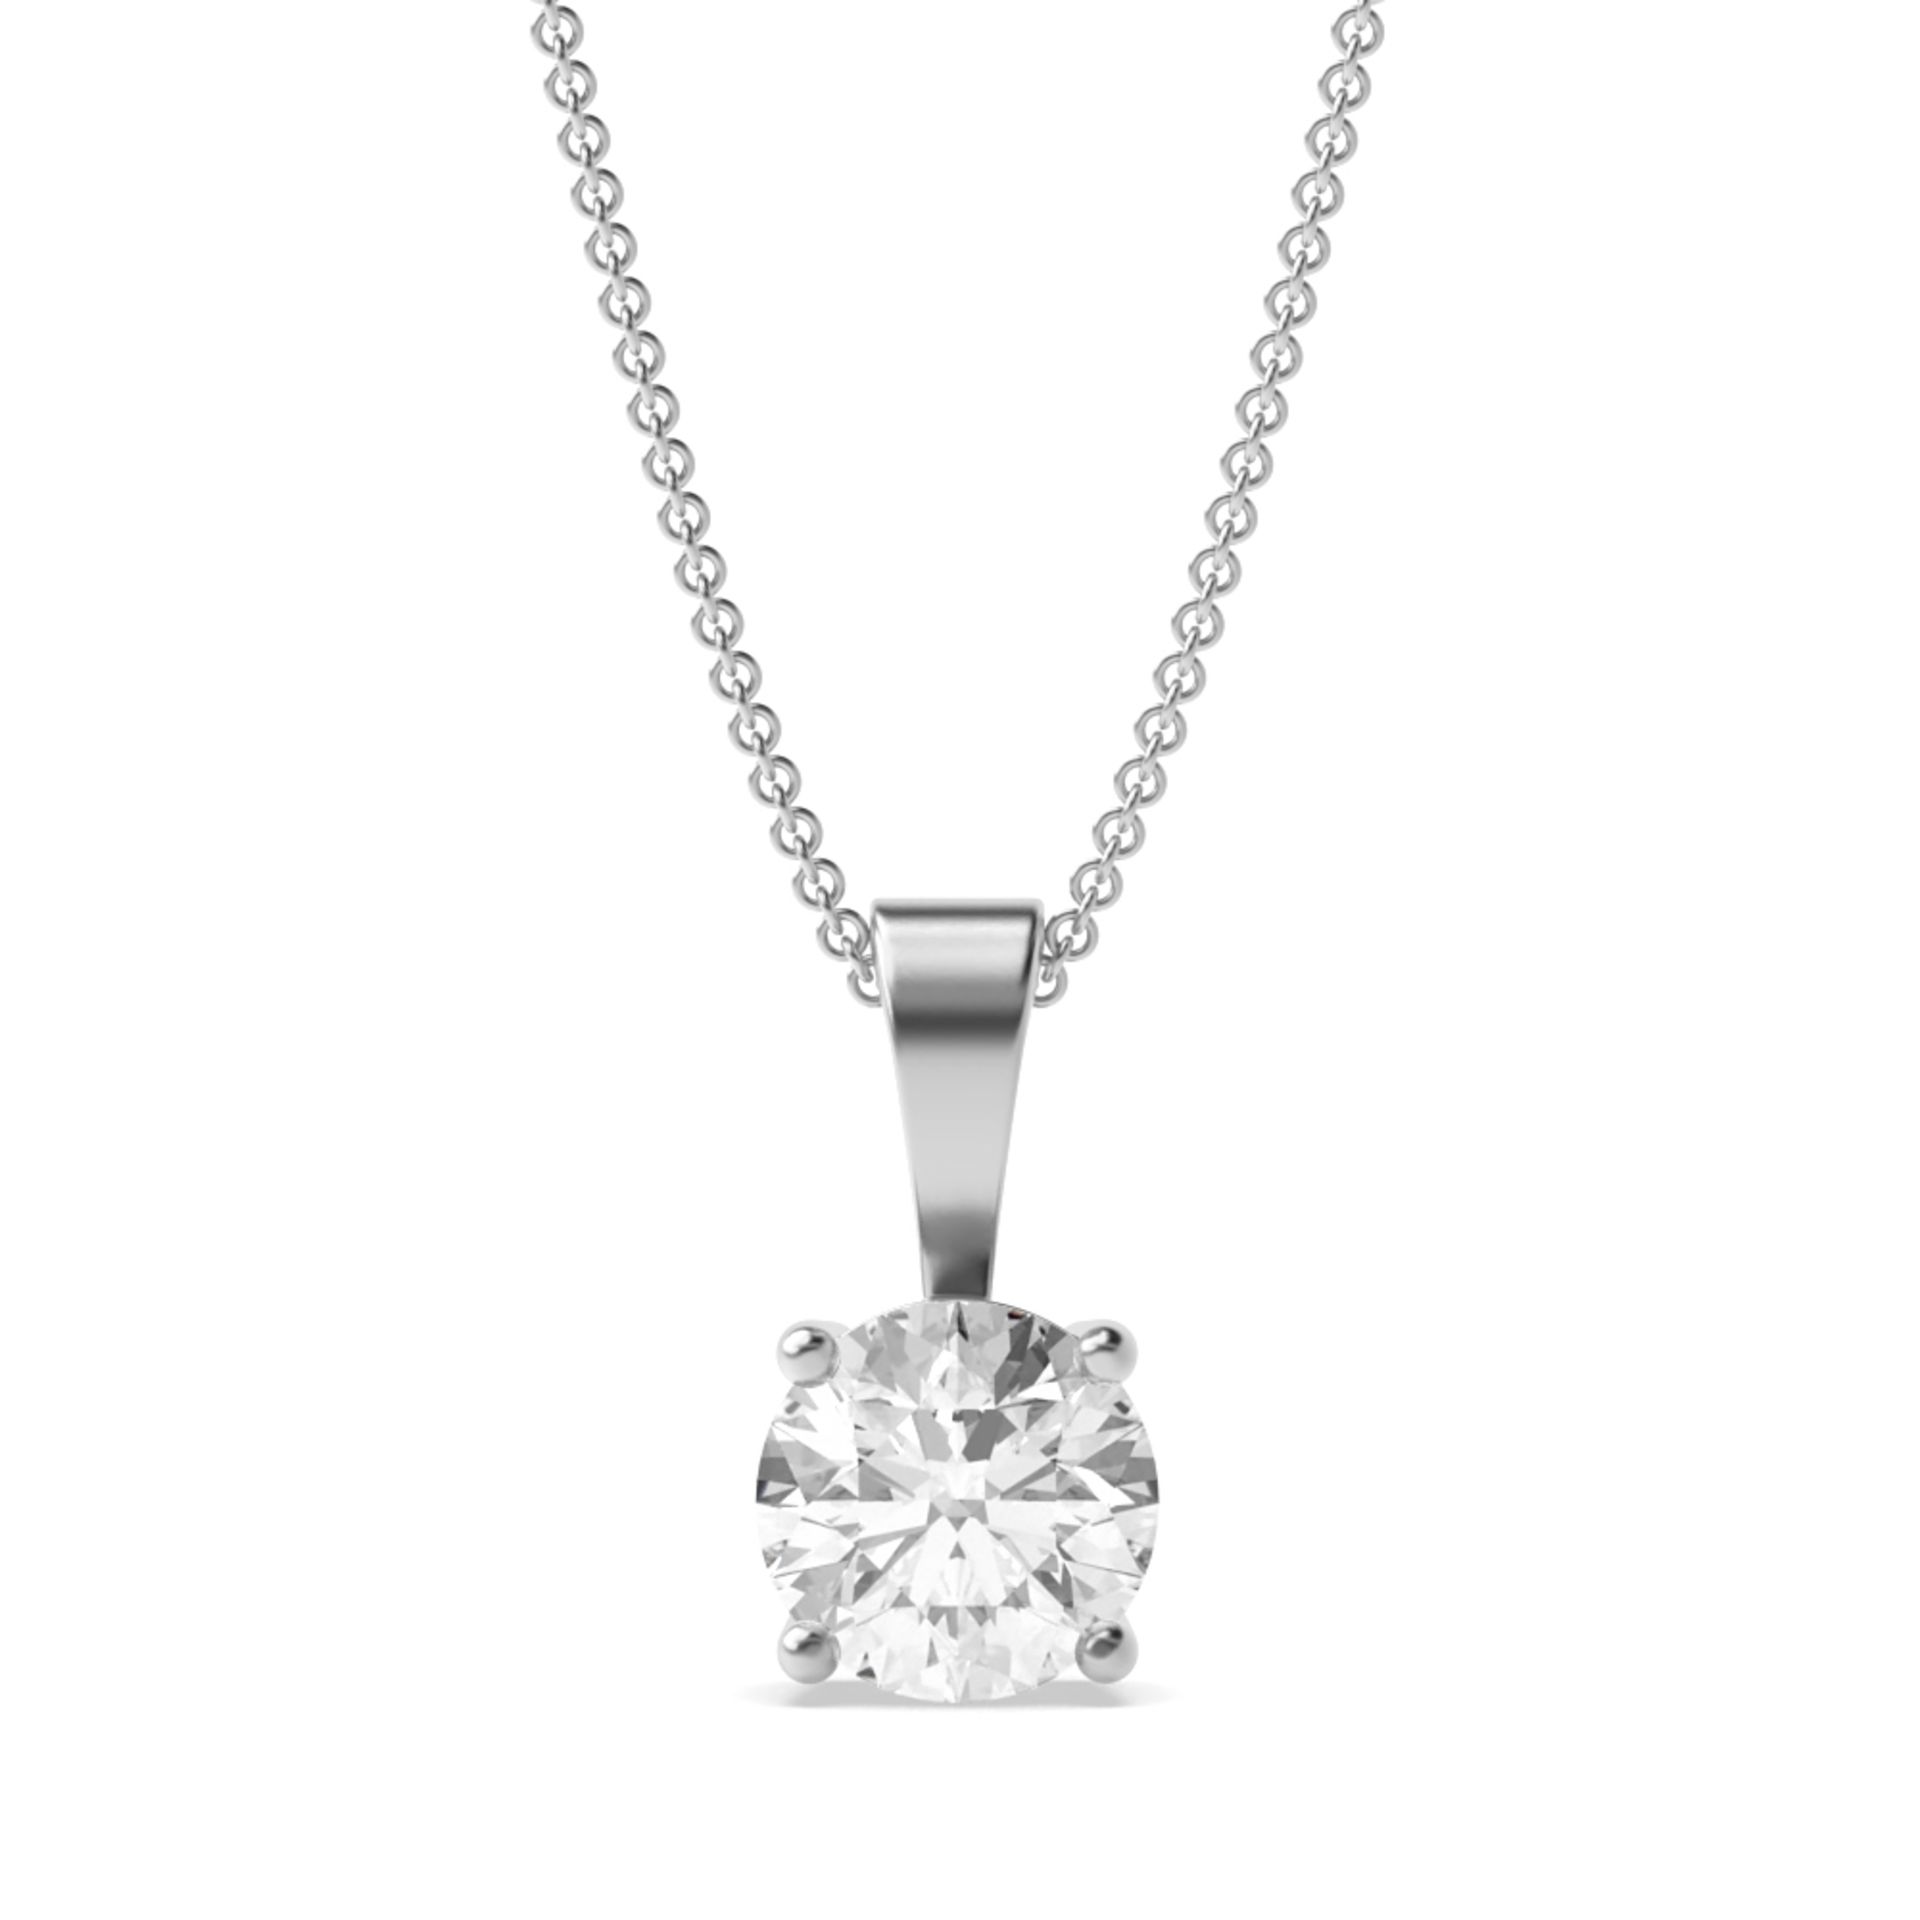 Round Brilliant Cut Diamond 1.00 Carat E Colour VVS1 Clarity - Necklace Pendant - 18kt White Gold